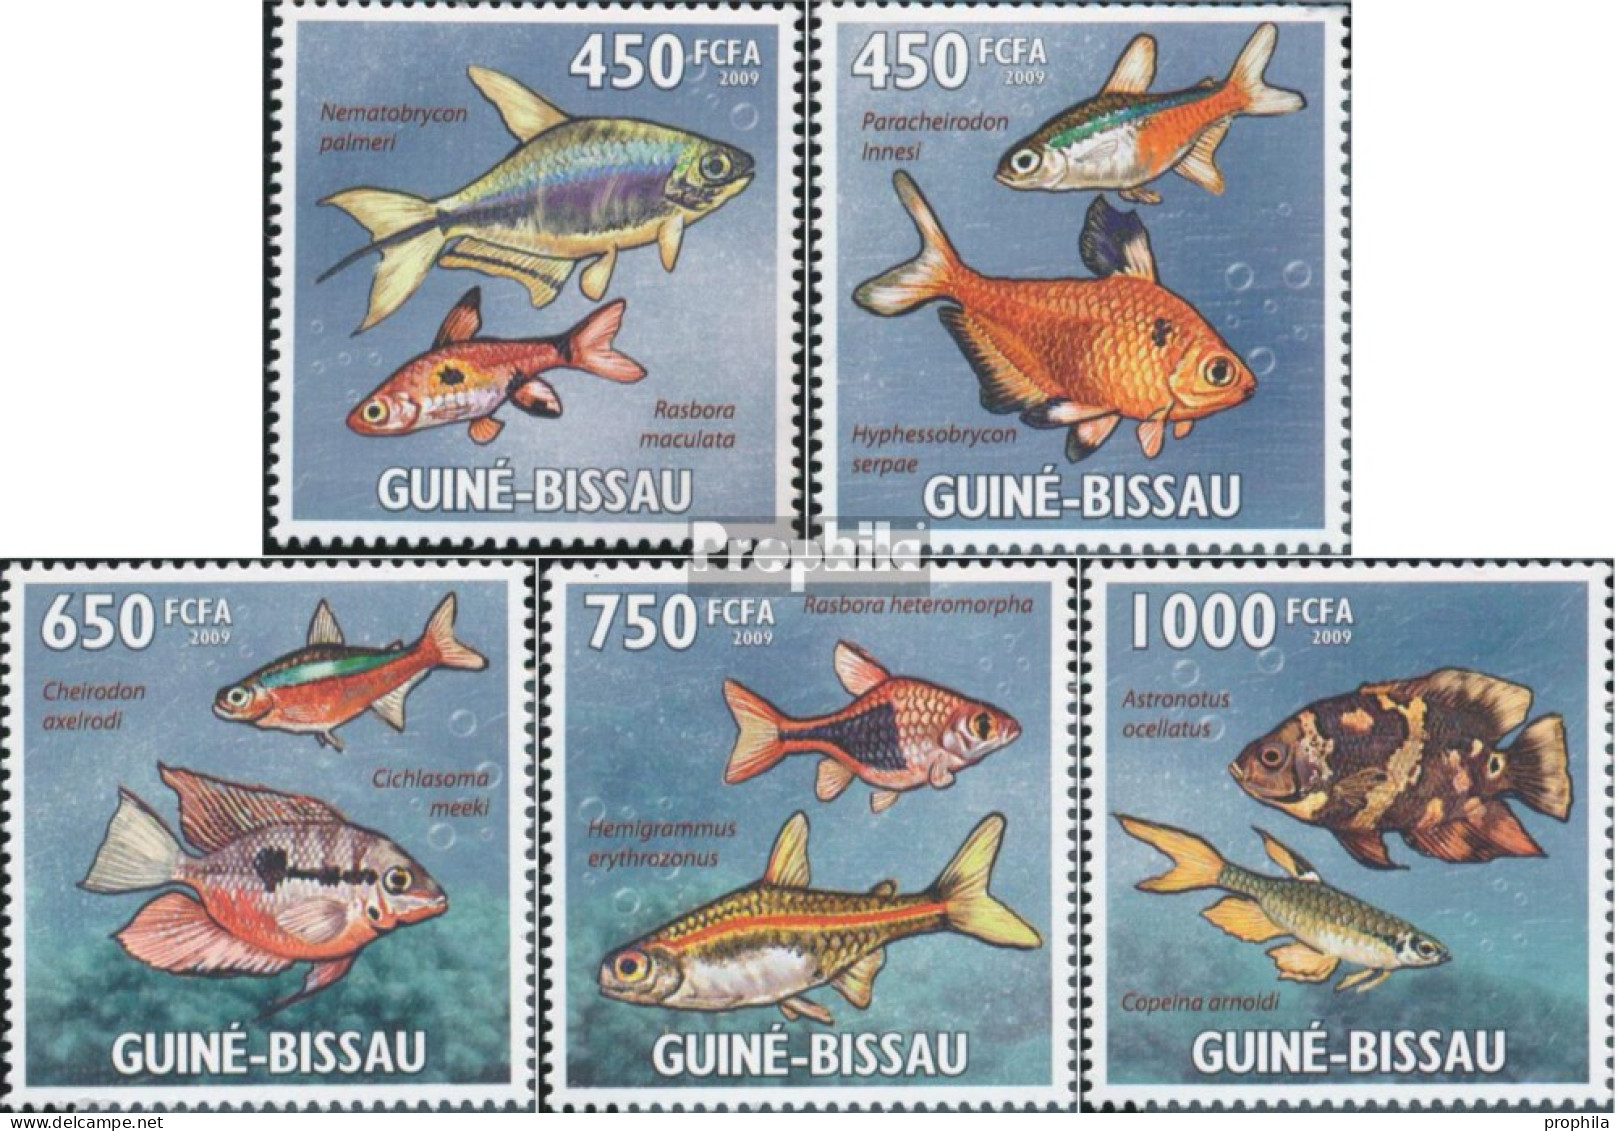 Guinea-Bissau 4468-4472 (kompl. Ausgabe) Postfrisch 2009 Tropische Fische - Guinea-Bissau